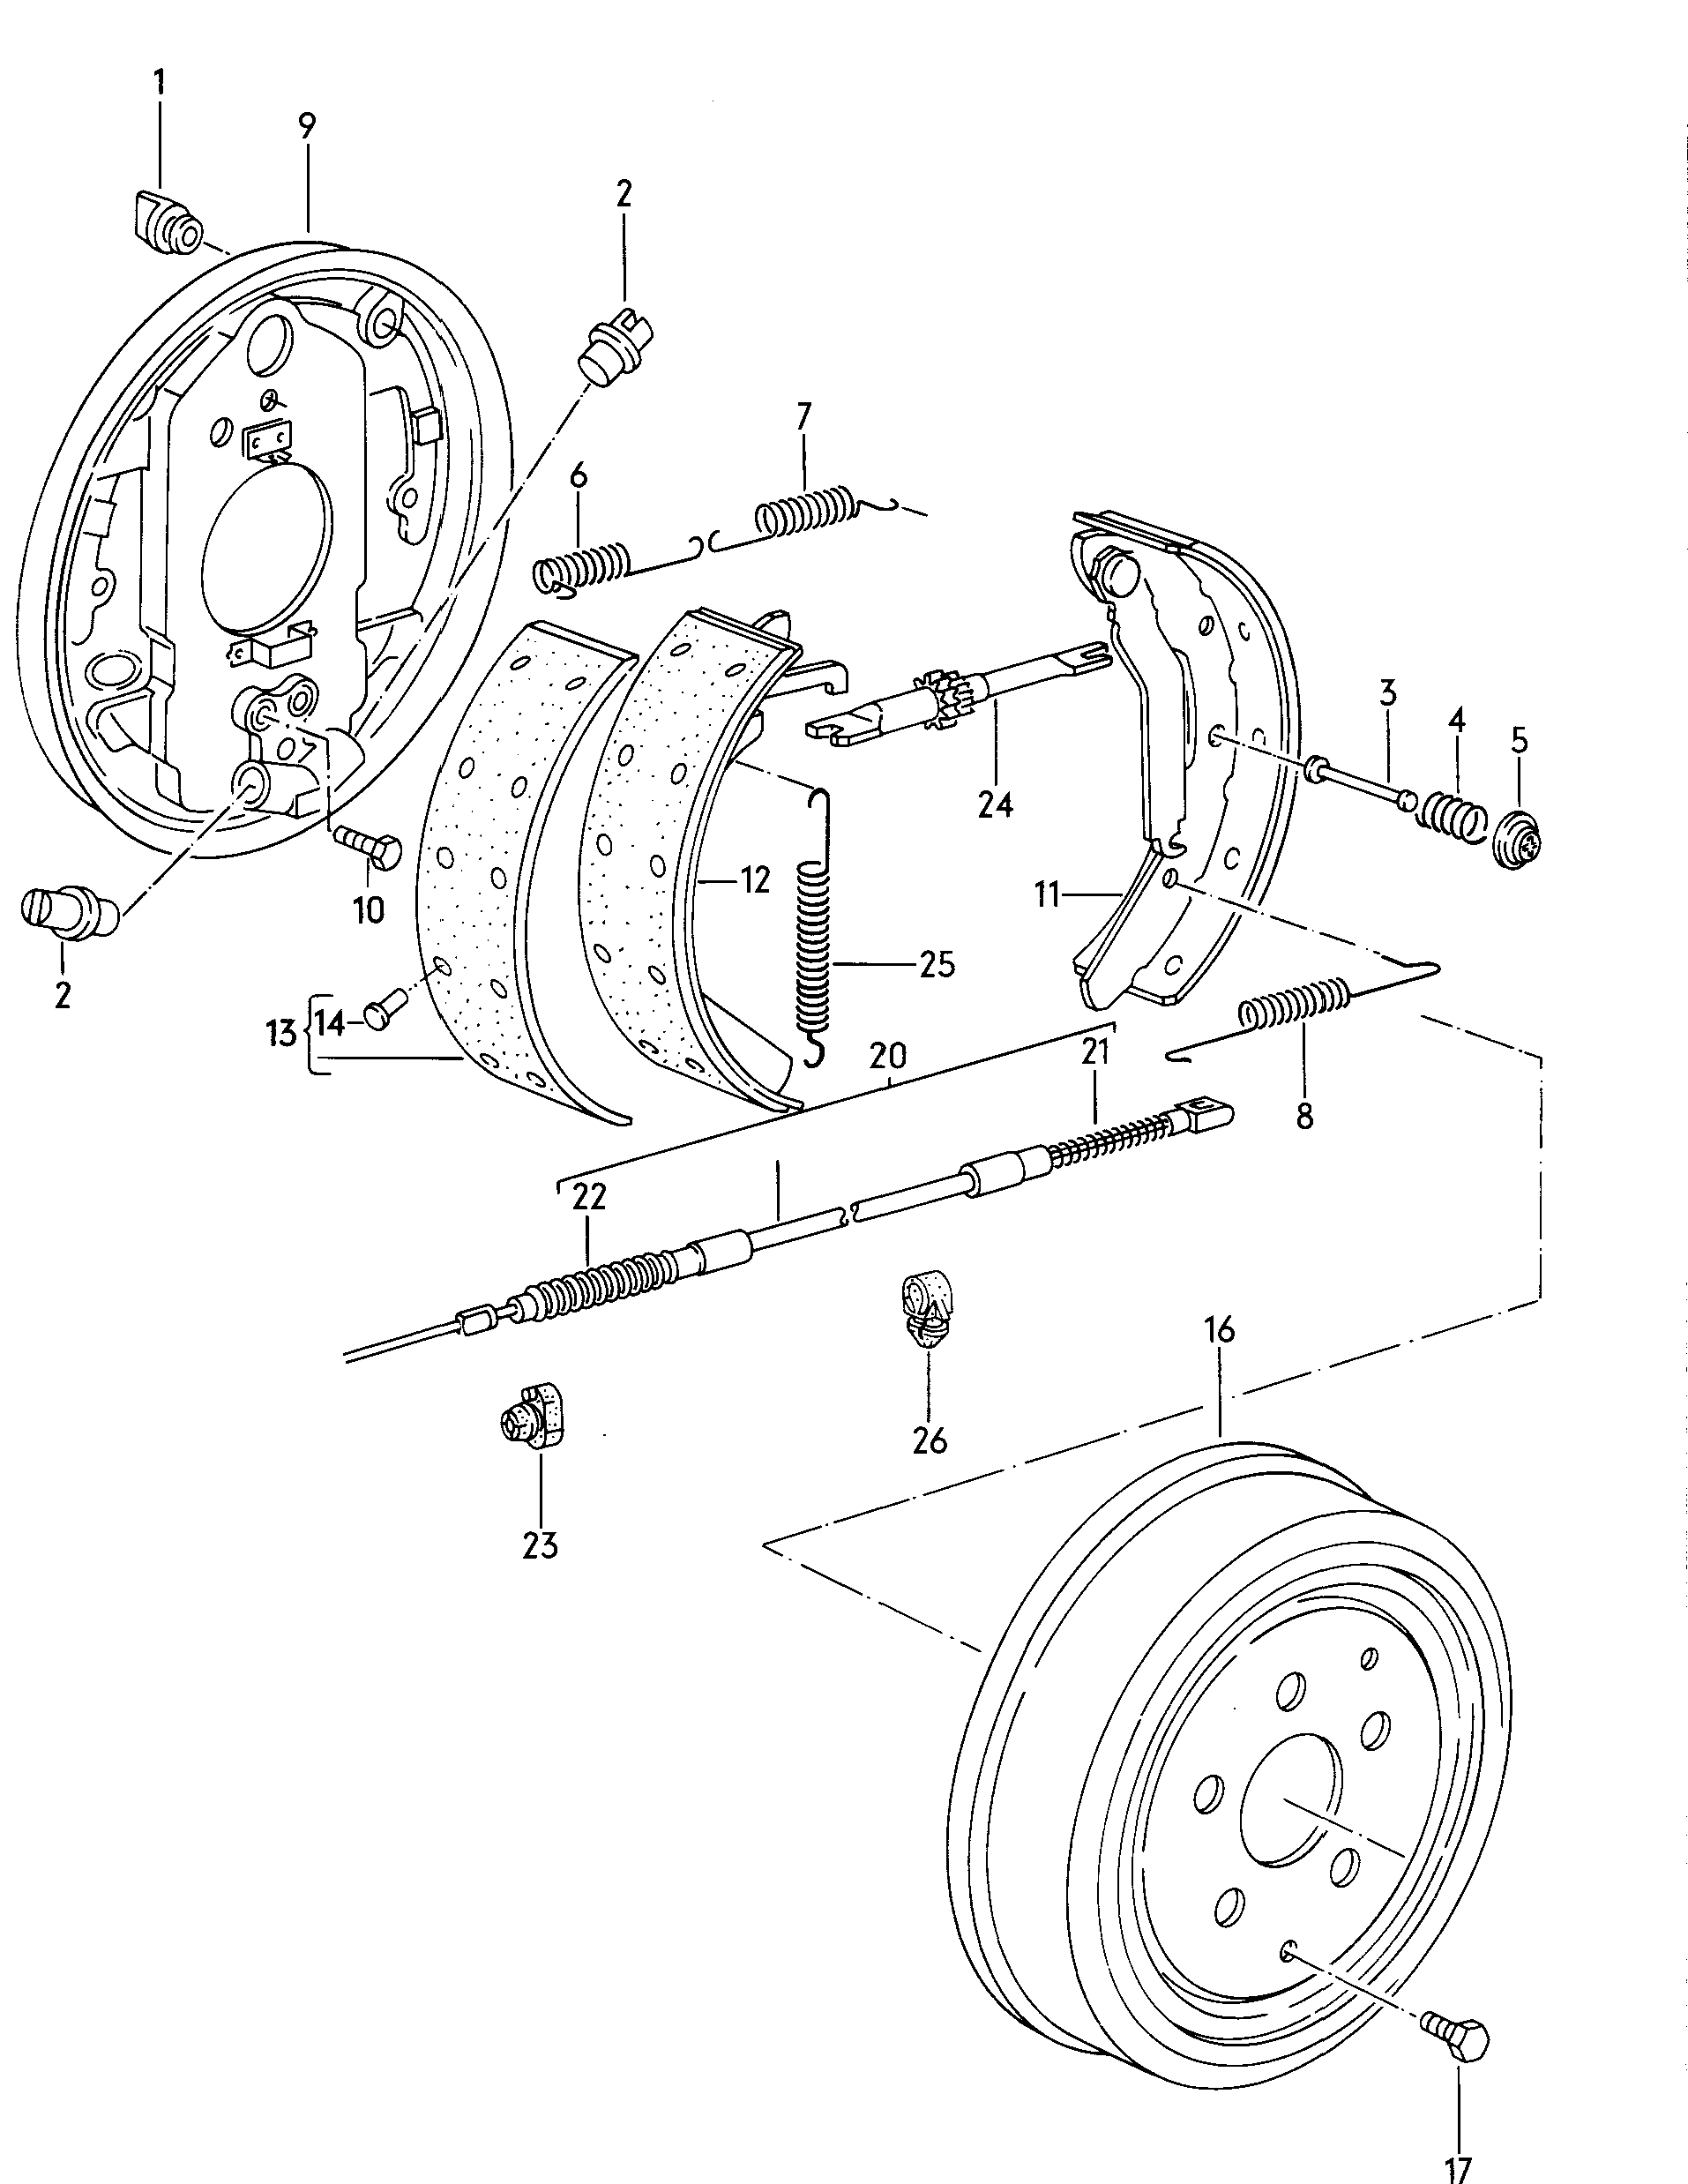 Bremsbacke mit Belag; Bremszug; Bremstrommel - Typ 2/syncro(T2)  